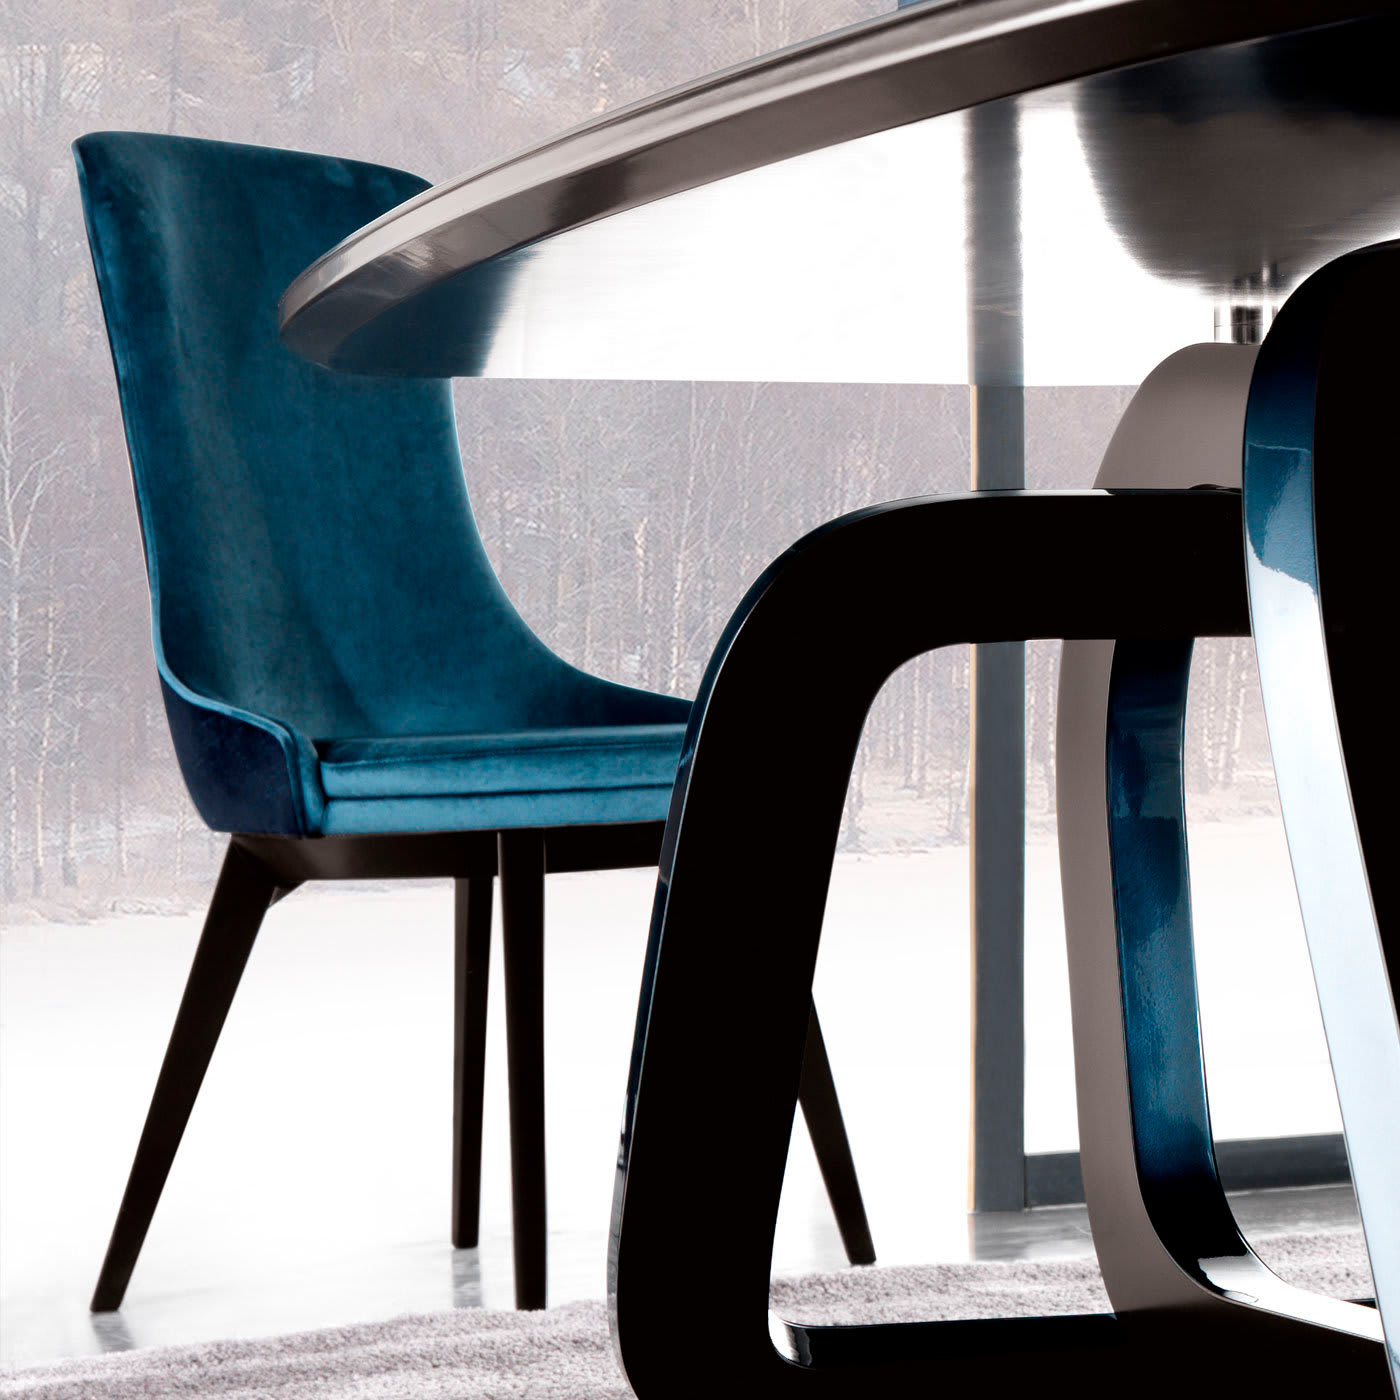 Robin Blue Chair by Archirivolto - Corte Zari